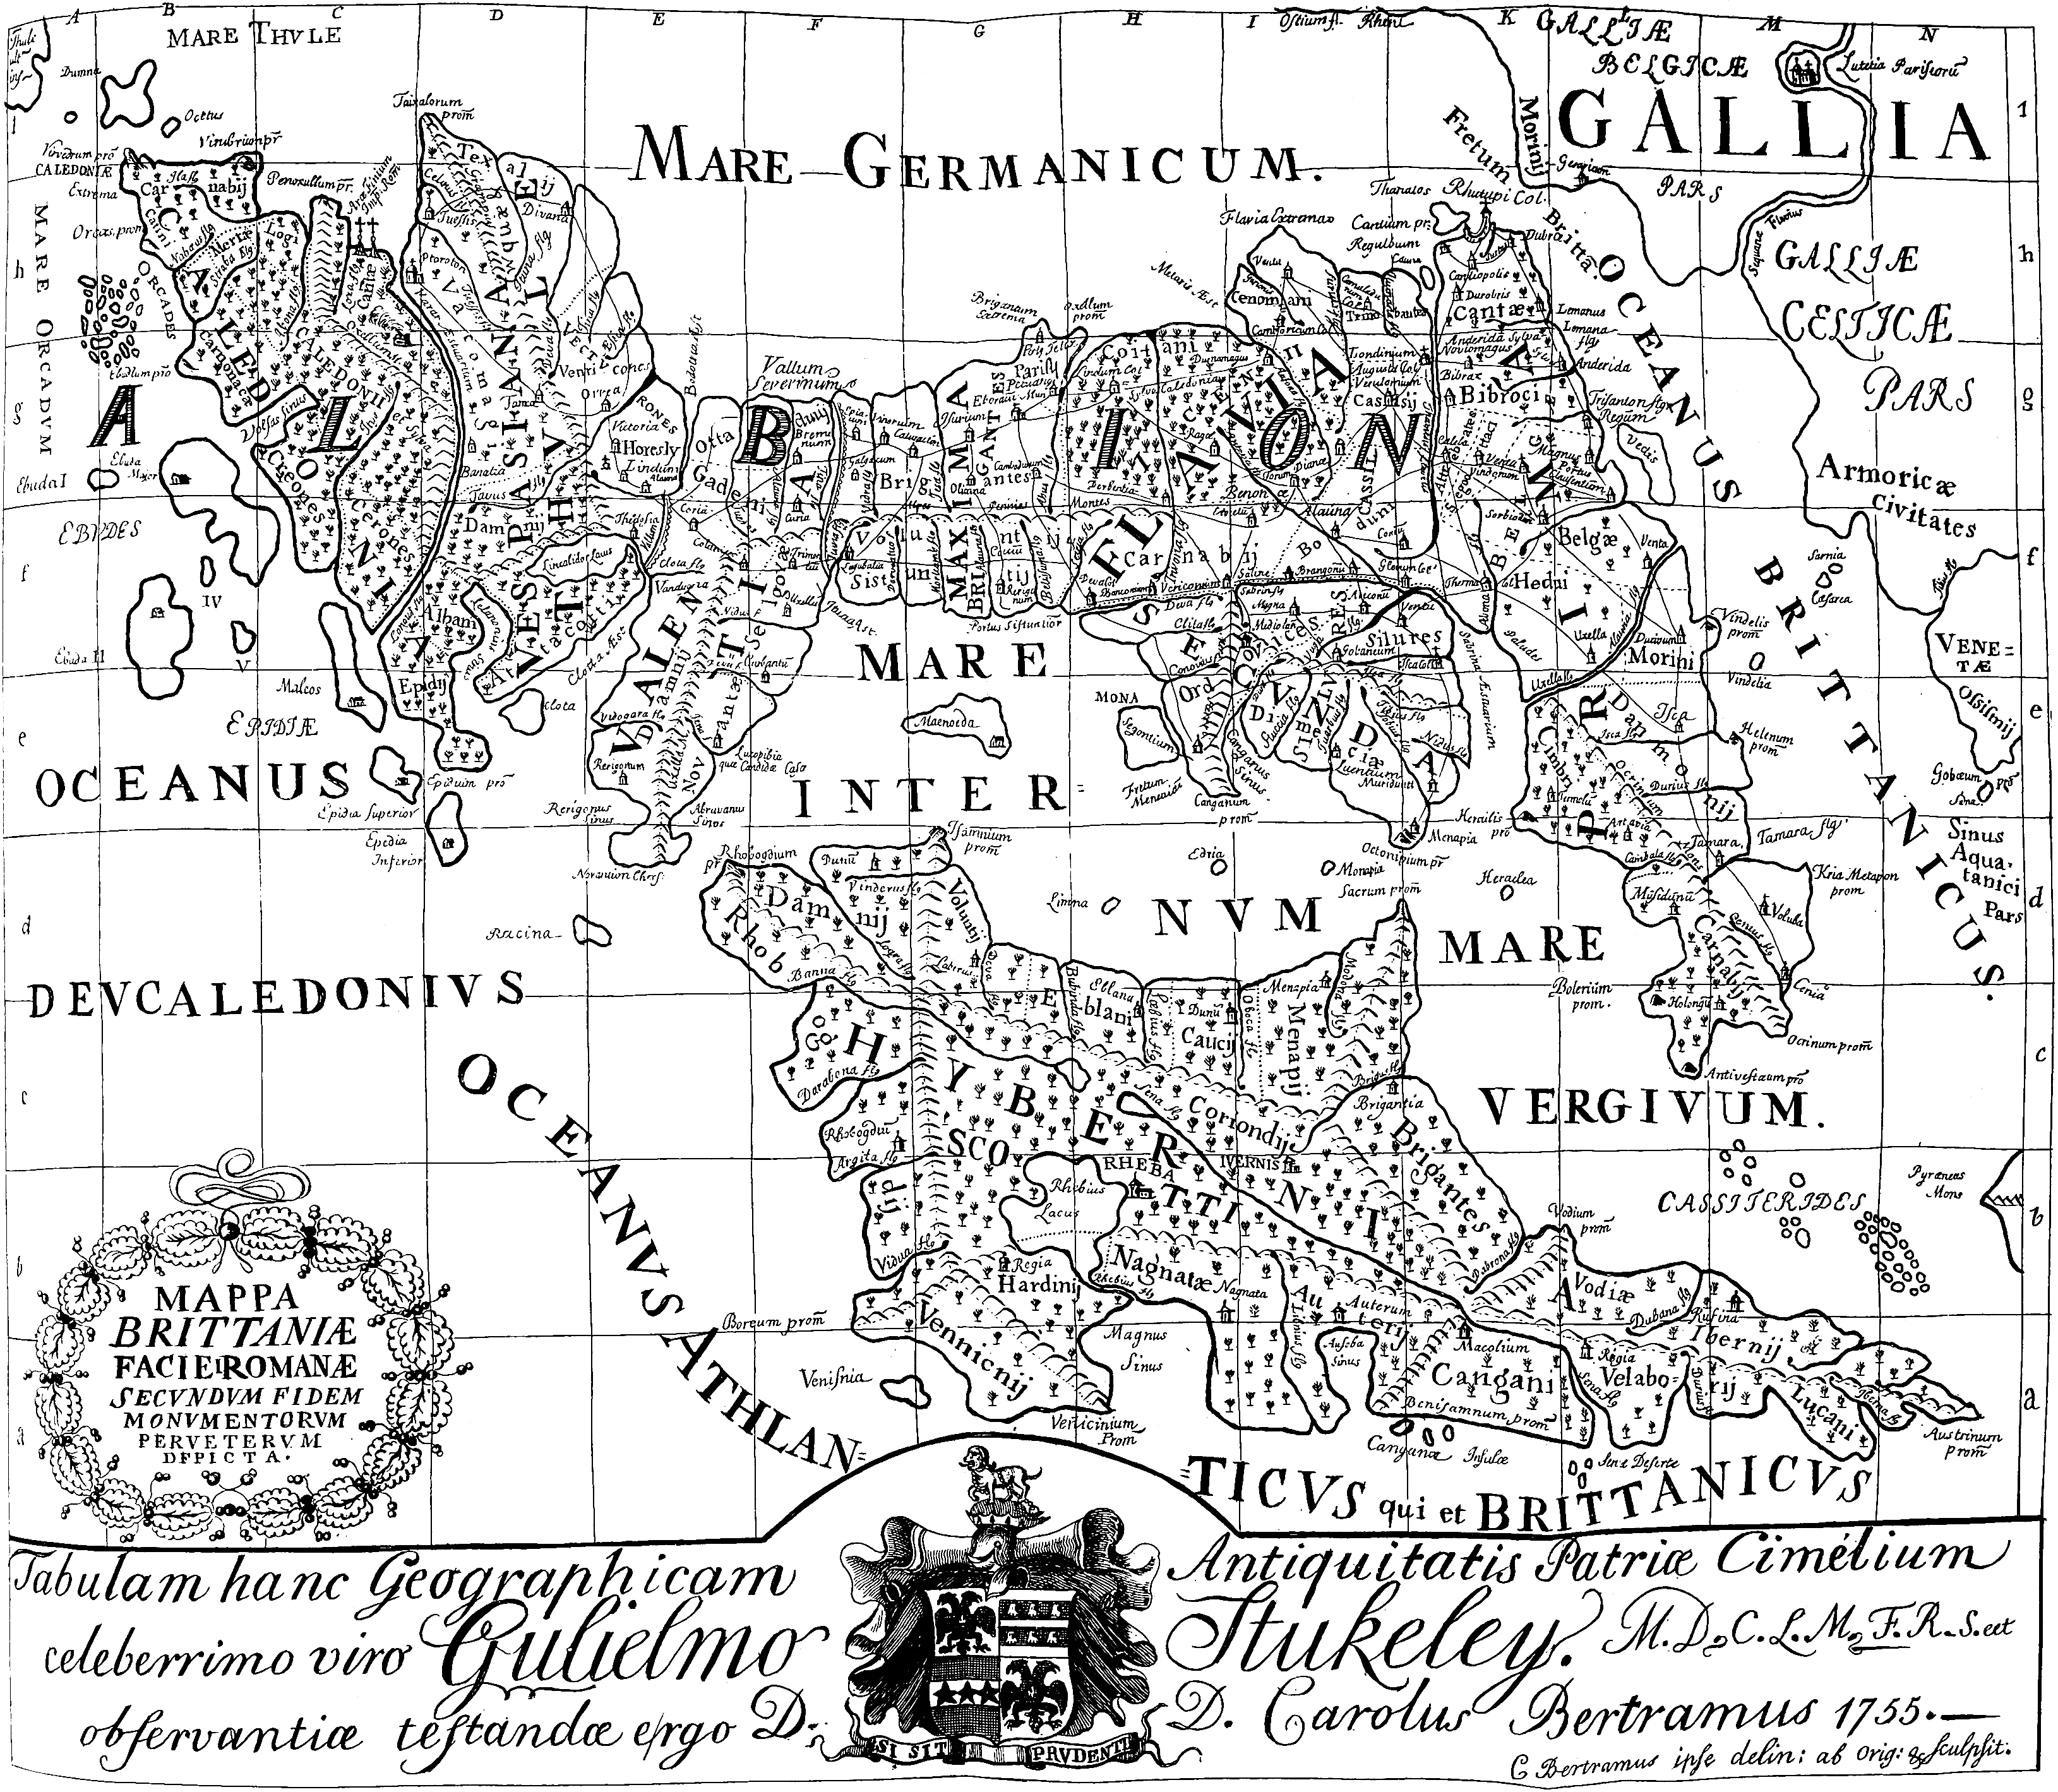 Mappa Brittaniæ Facie Romanæ